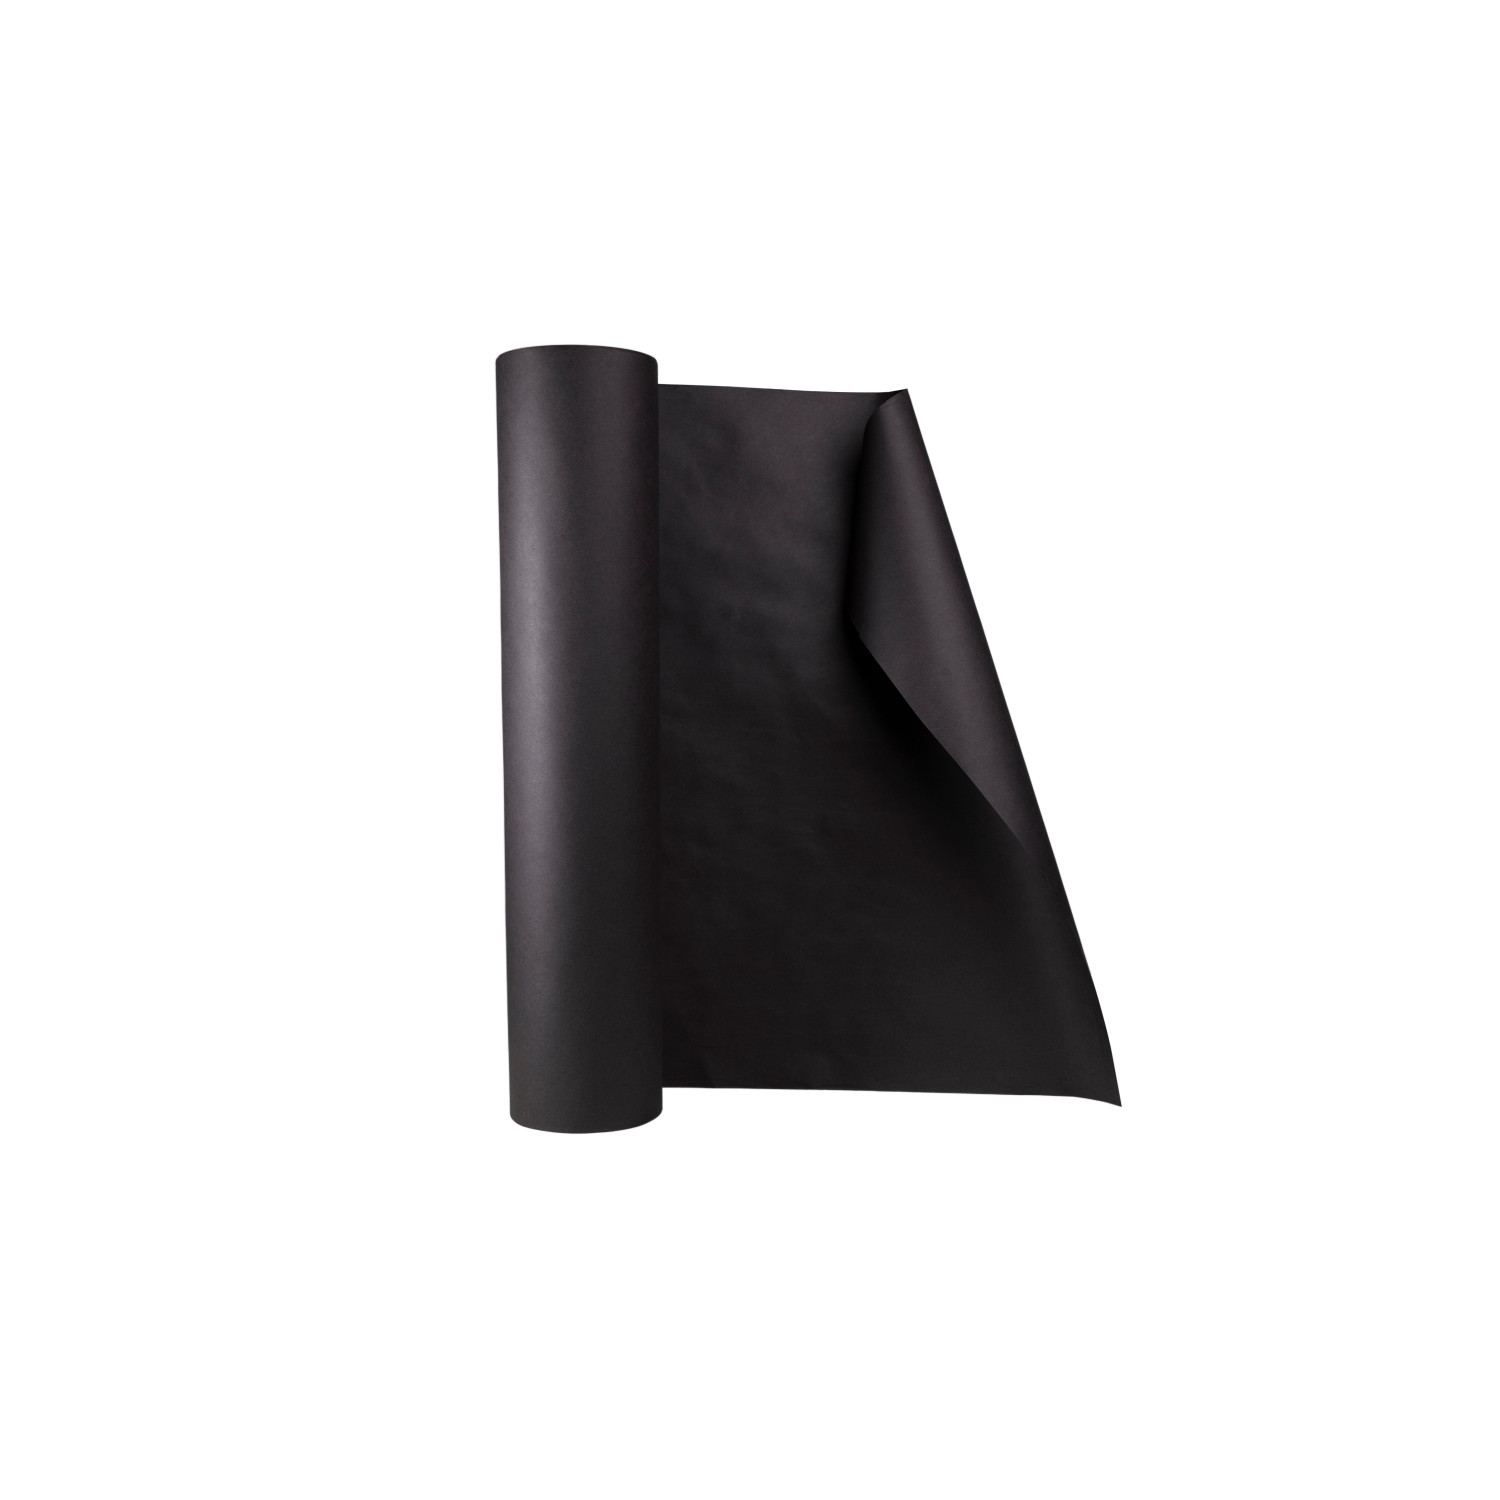 48 - 50 lb. Black Kraft Paper Roll - 1 Roll